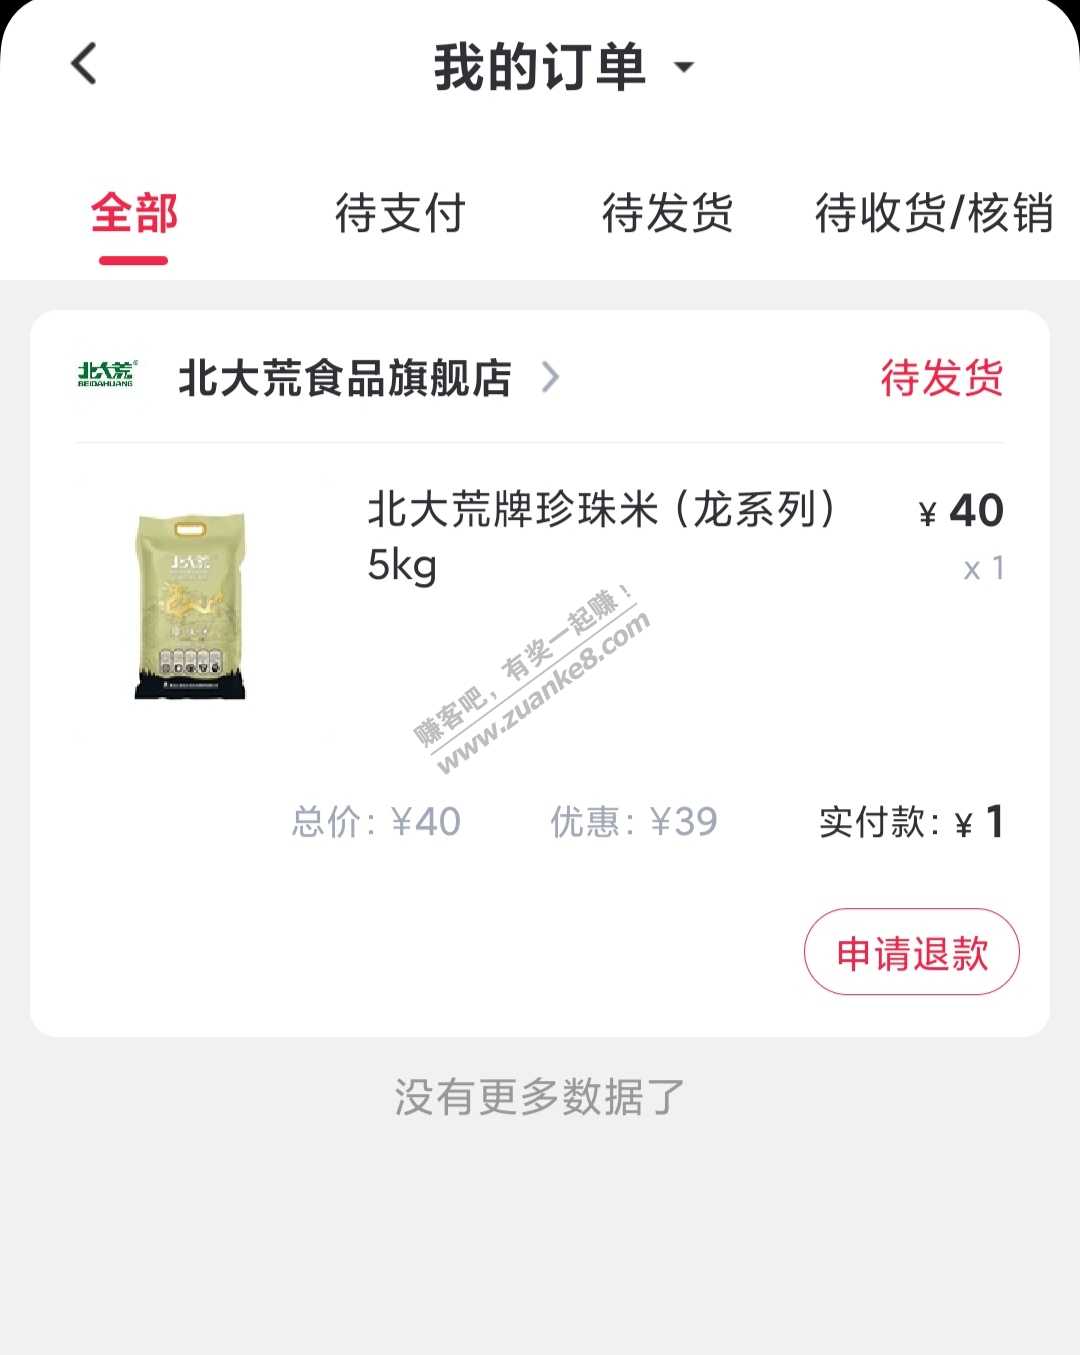 1块鲁10斤大米或者油-惠小助(52huixz.com)